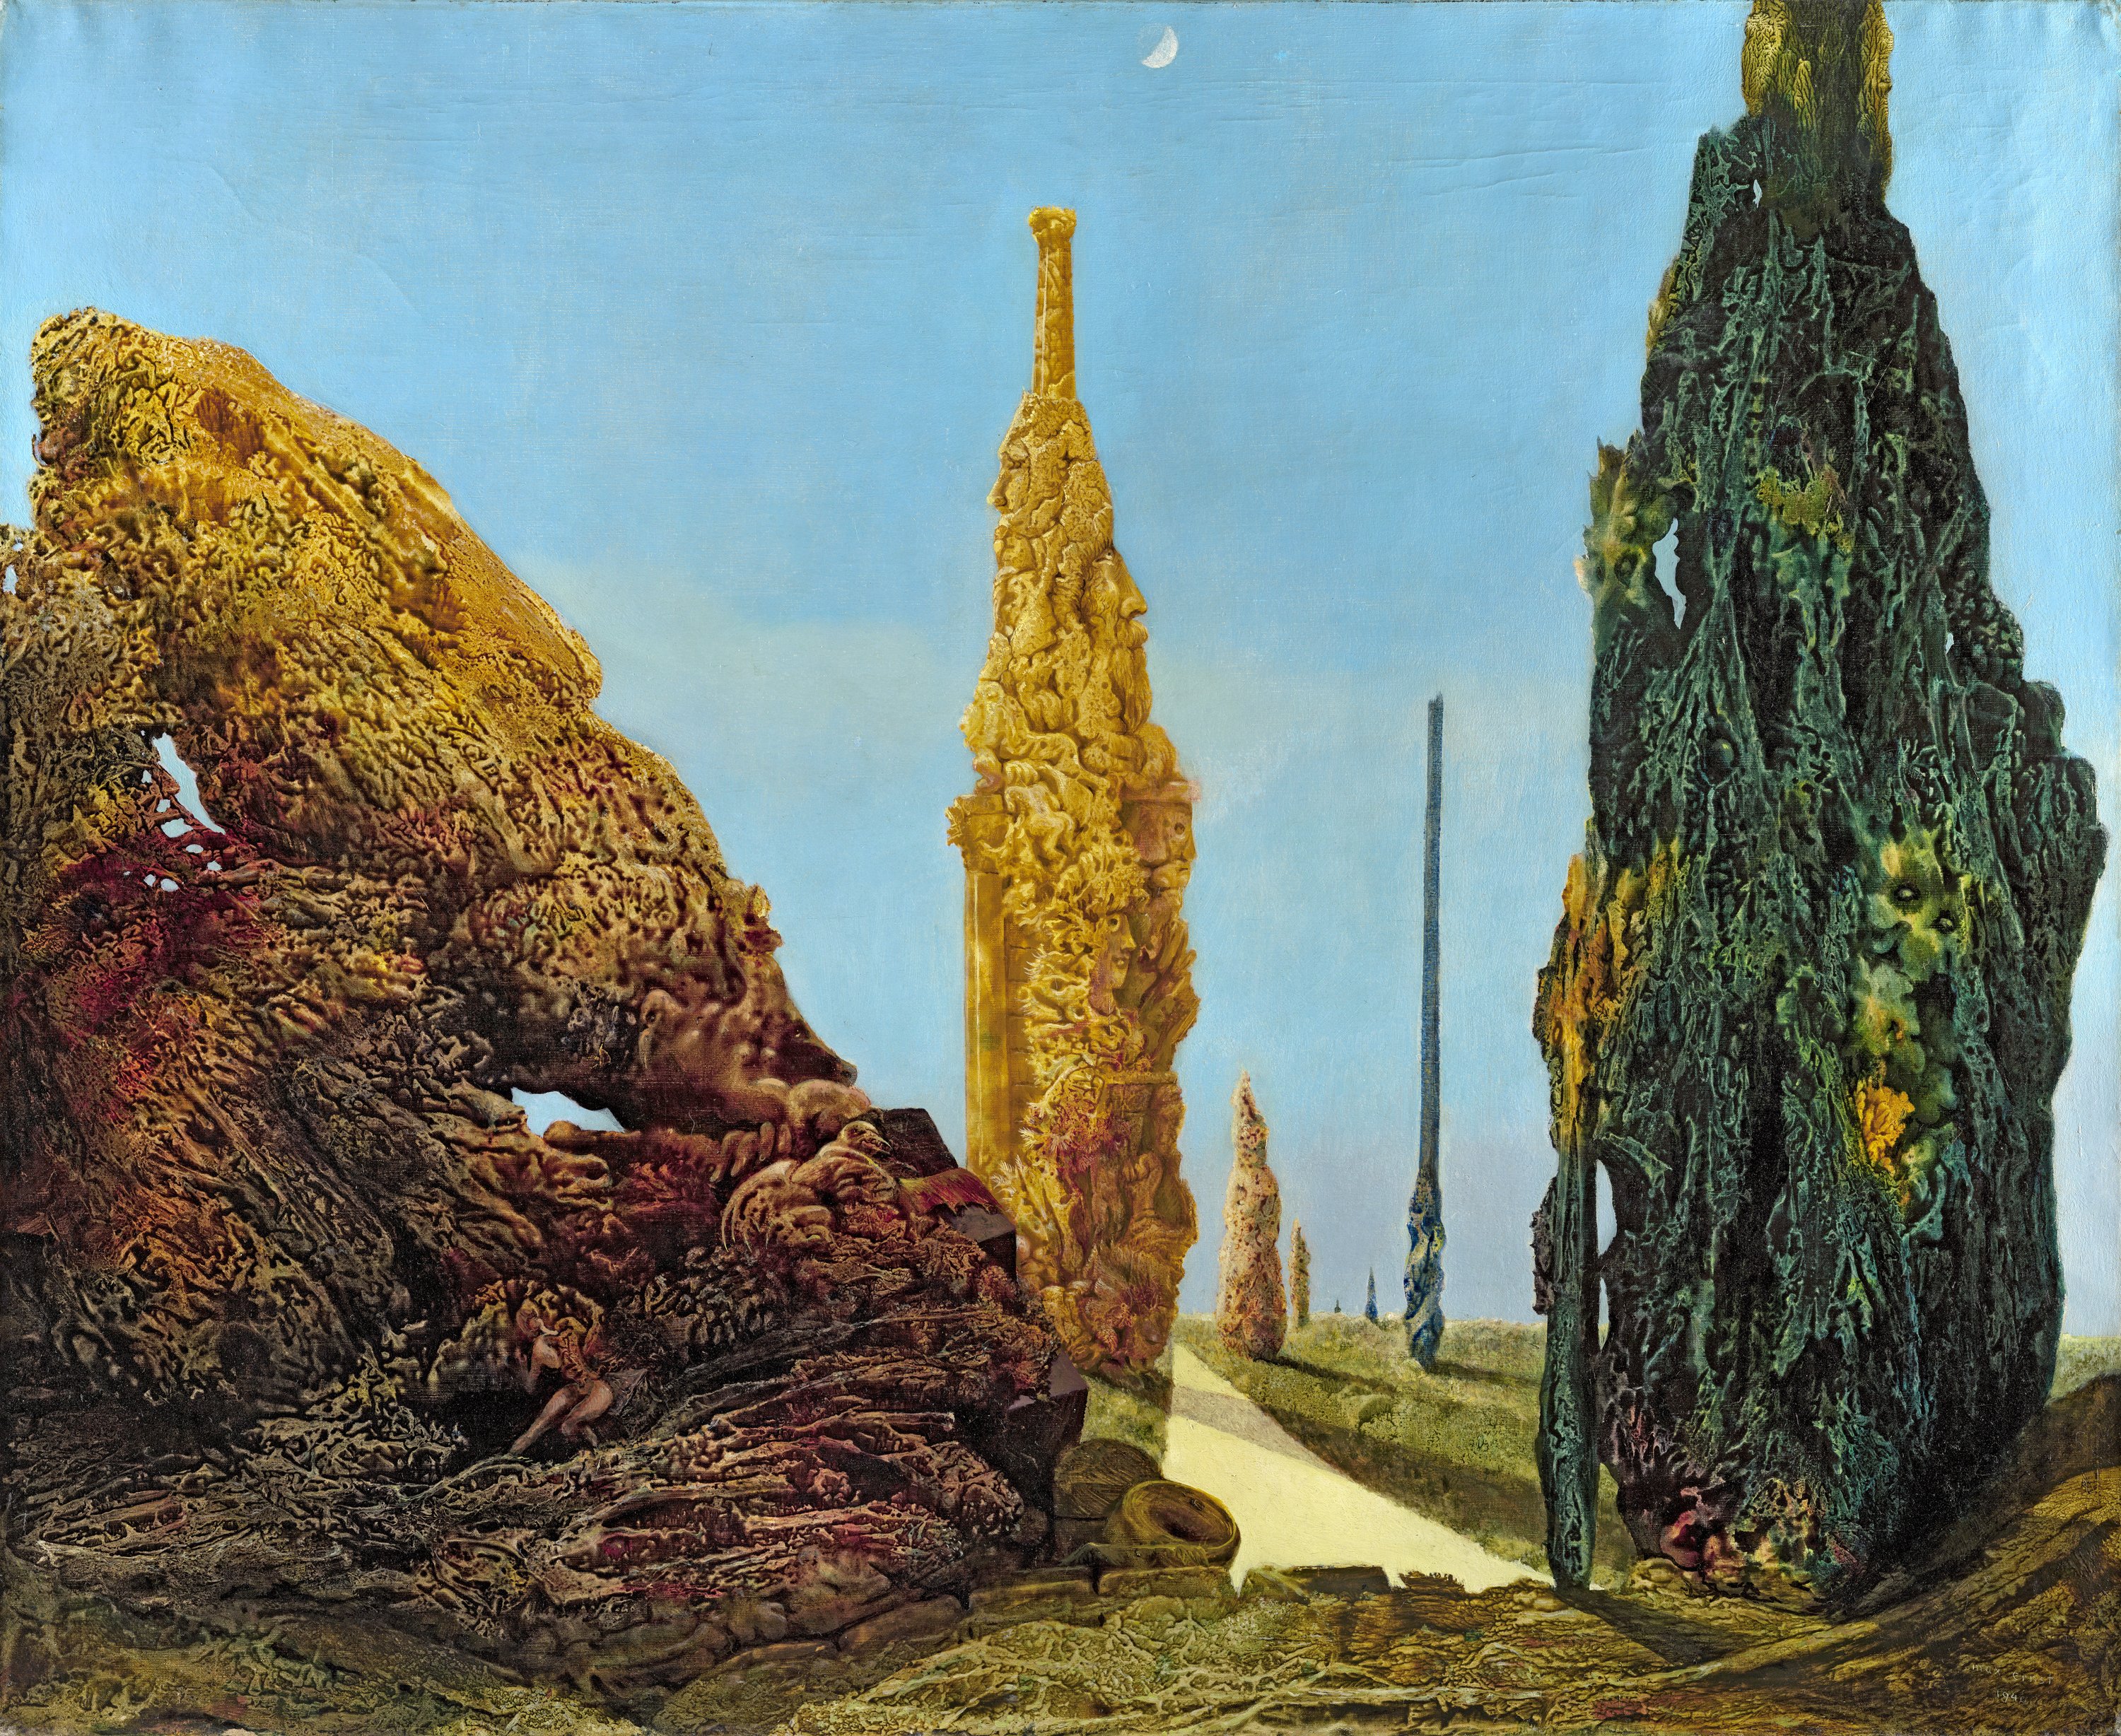 Árbol solitario y árboles conyugales. Max Ernst